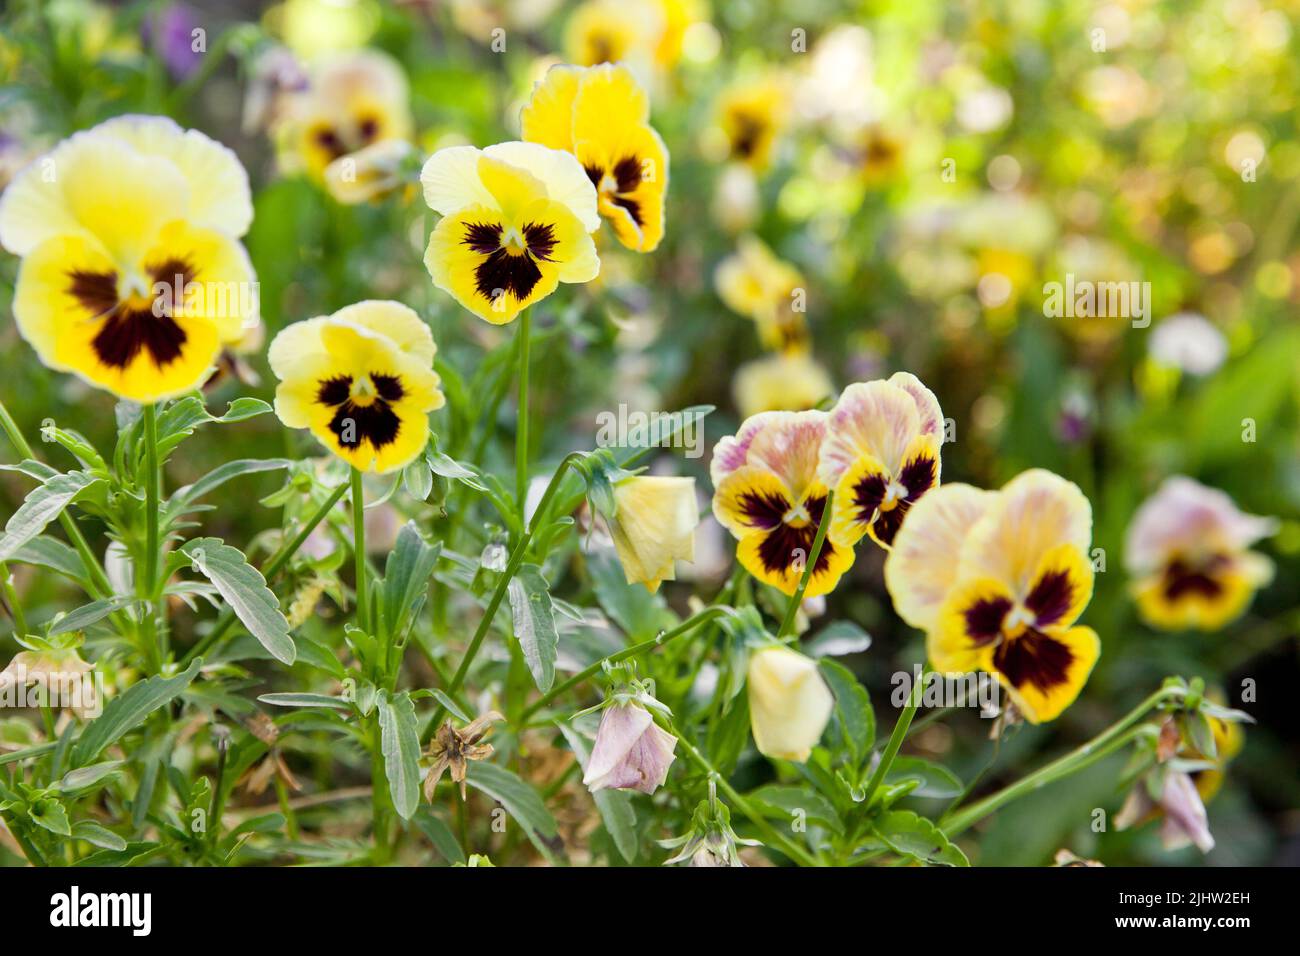 Blumen Stiefmütterchen leuchtend gelbe Farben mit einem dunklen Mitte-Nahaufnahme. Nahaufnahme Aufnahme in Eine Gruppe gelber Stiefmütterchen, Viola oder Violett. Selektiver Fokus für Backgroun Stockfoto